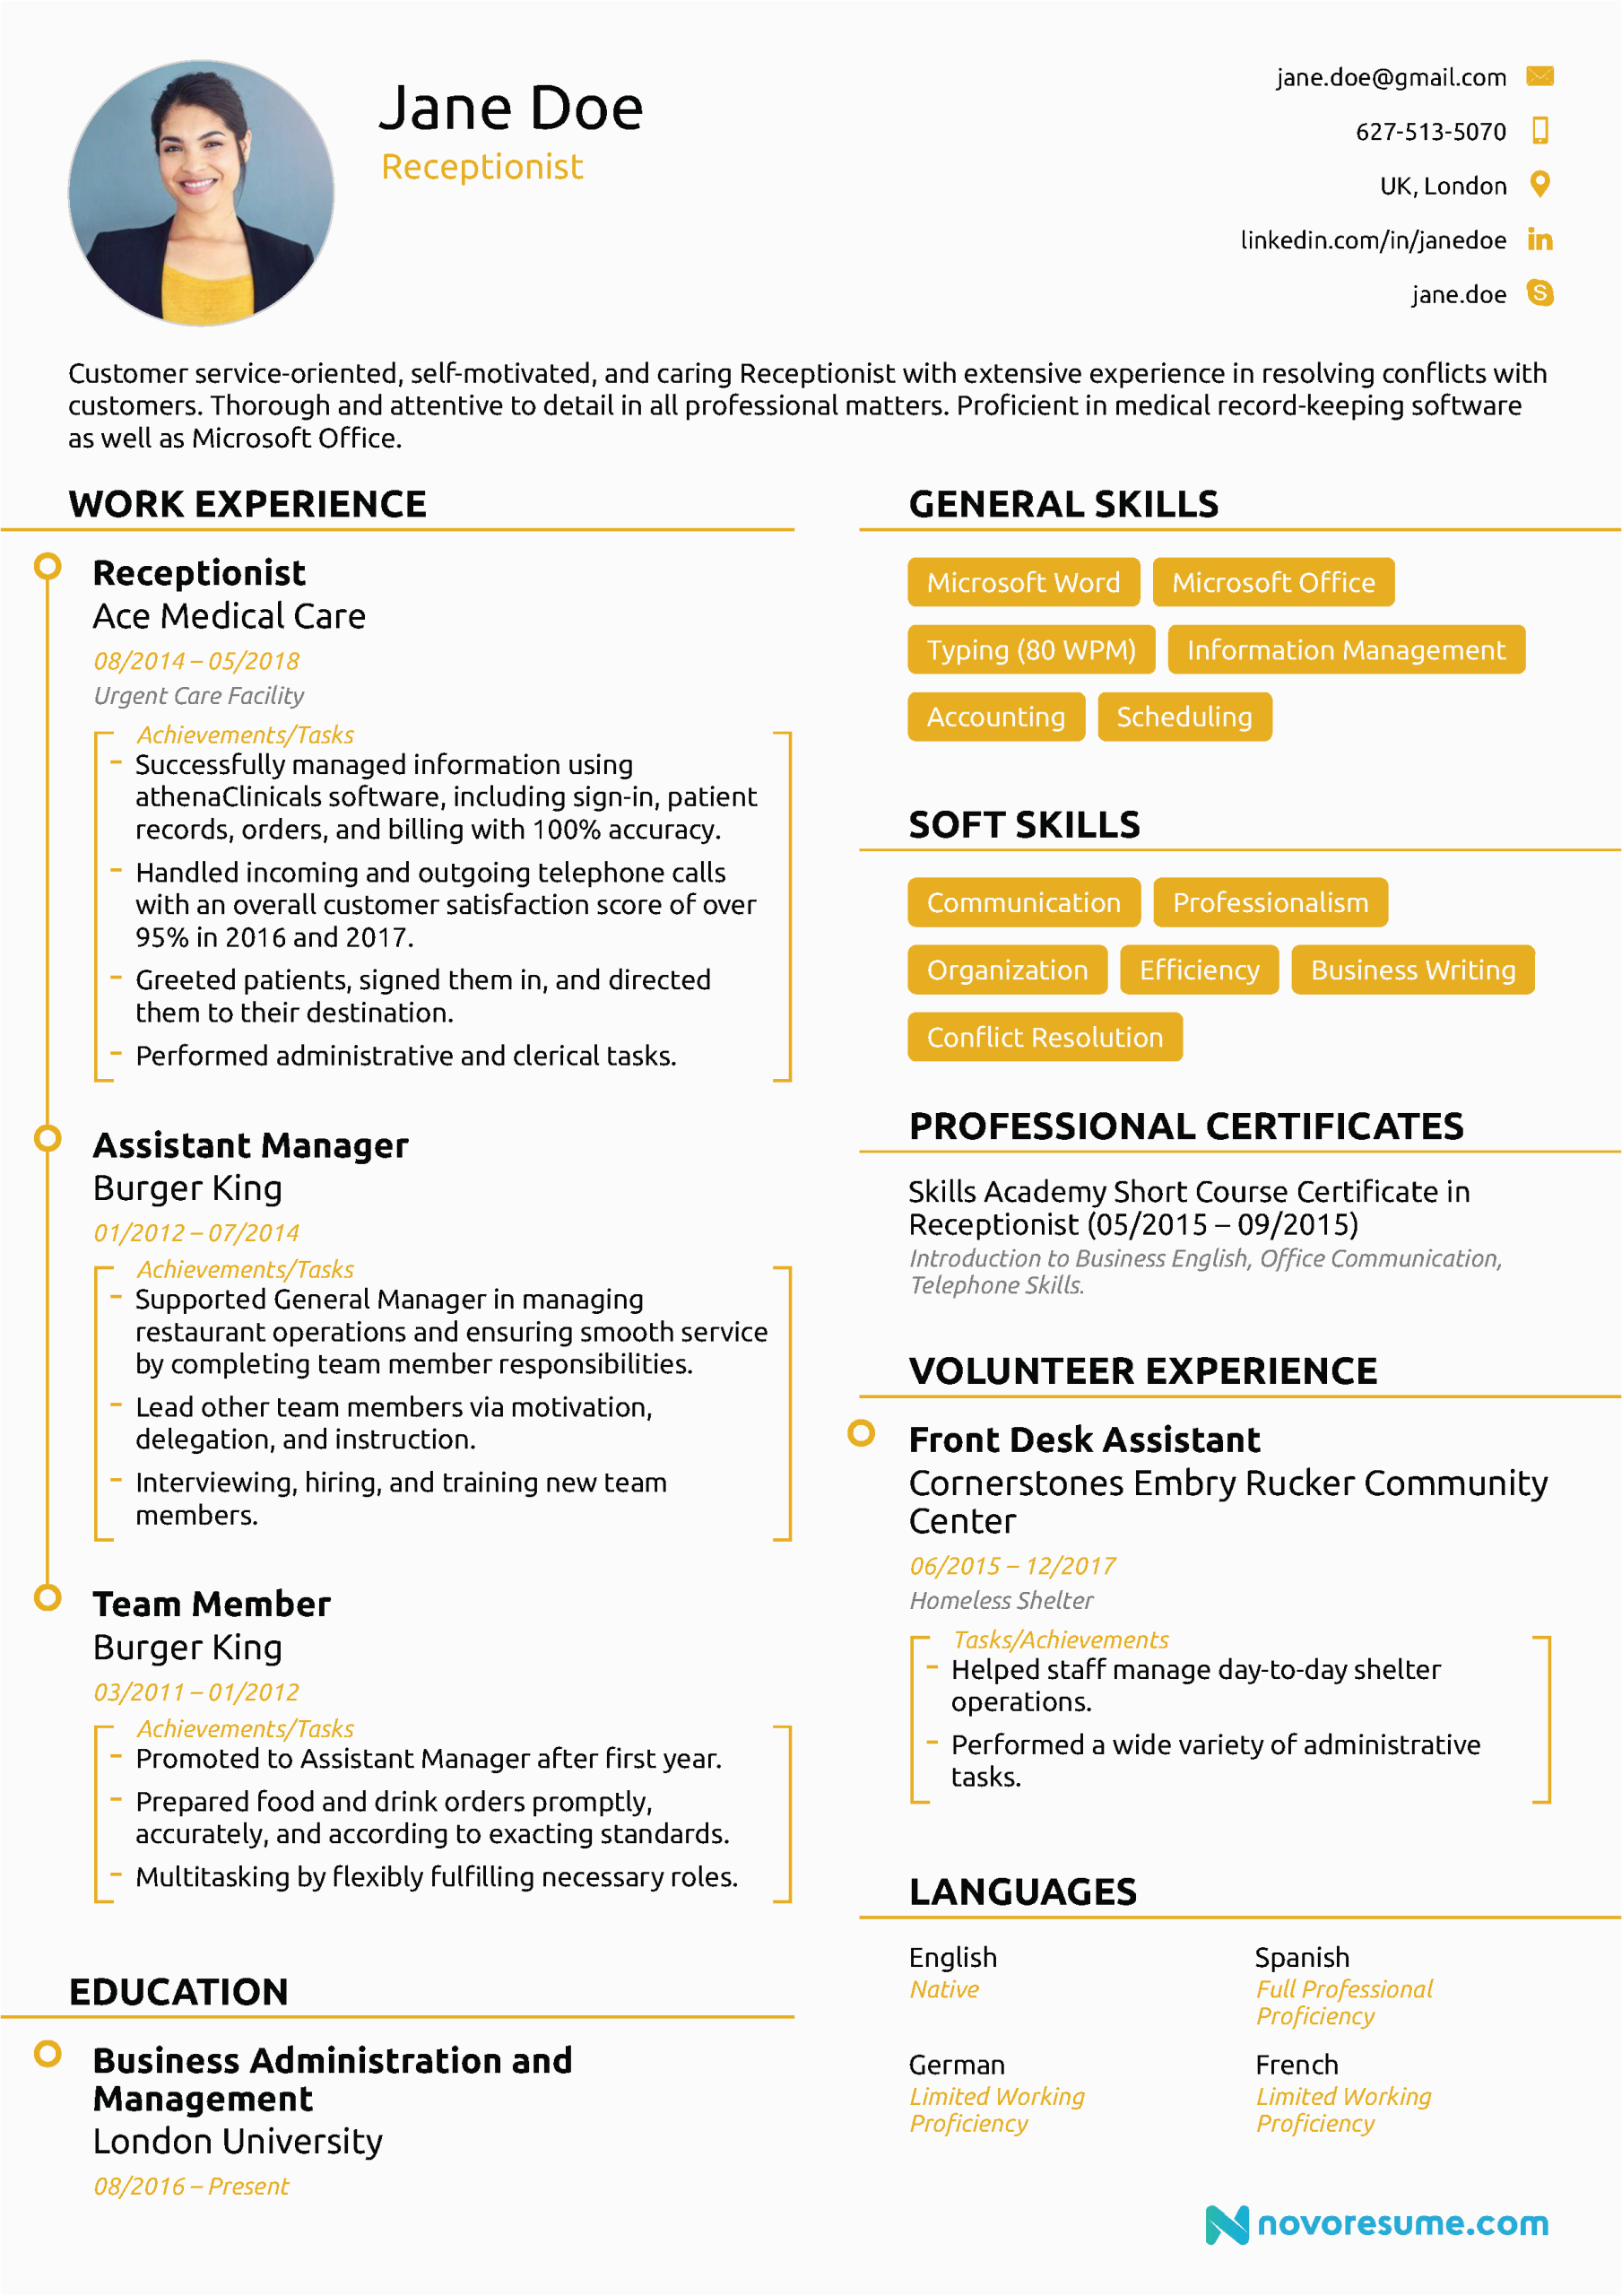 Burger King assistant Manager Resume Sample Best Resume format for Burger King Resmud